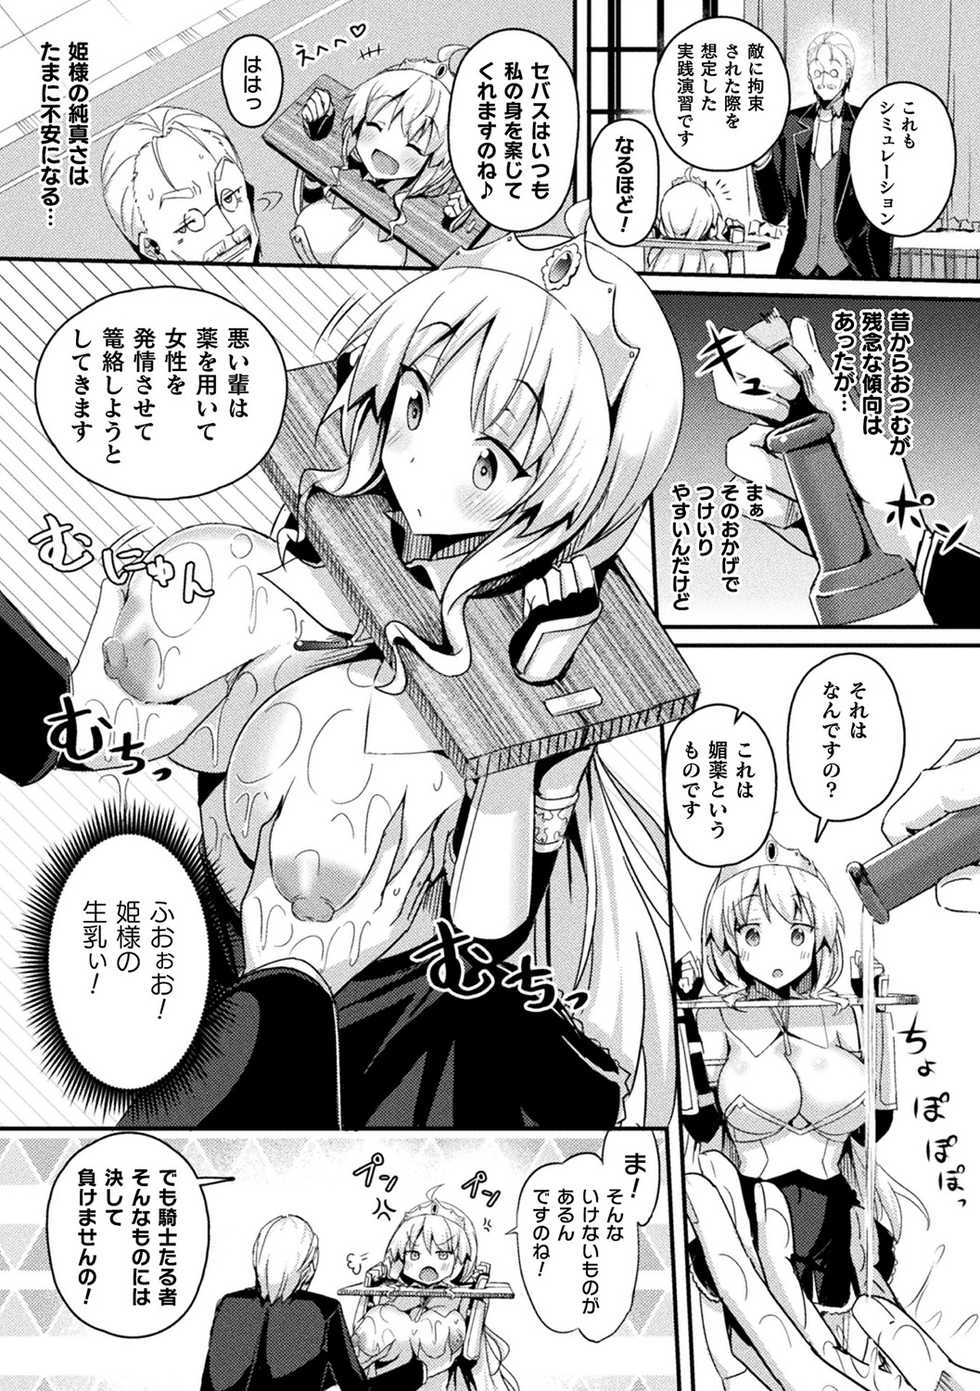 [Anthology] Bessatsu Comic Unreal Ponkotsu Fantasy Heroine H ~Doji o Funde Gyakuten Saretari Ero Trap ni Hamattari!?~ Vol. 2 [Digital] - Page 11